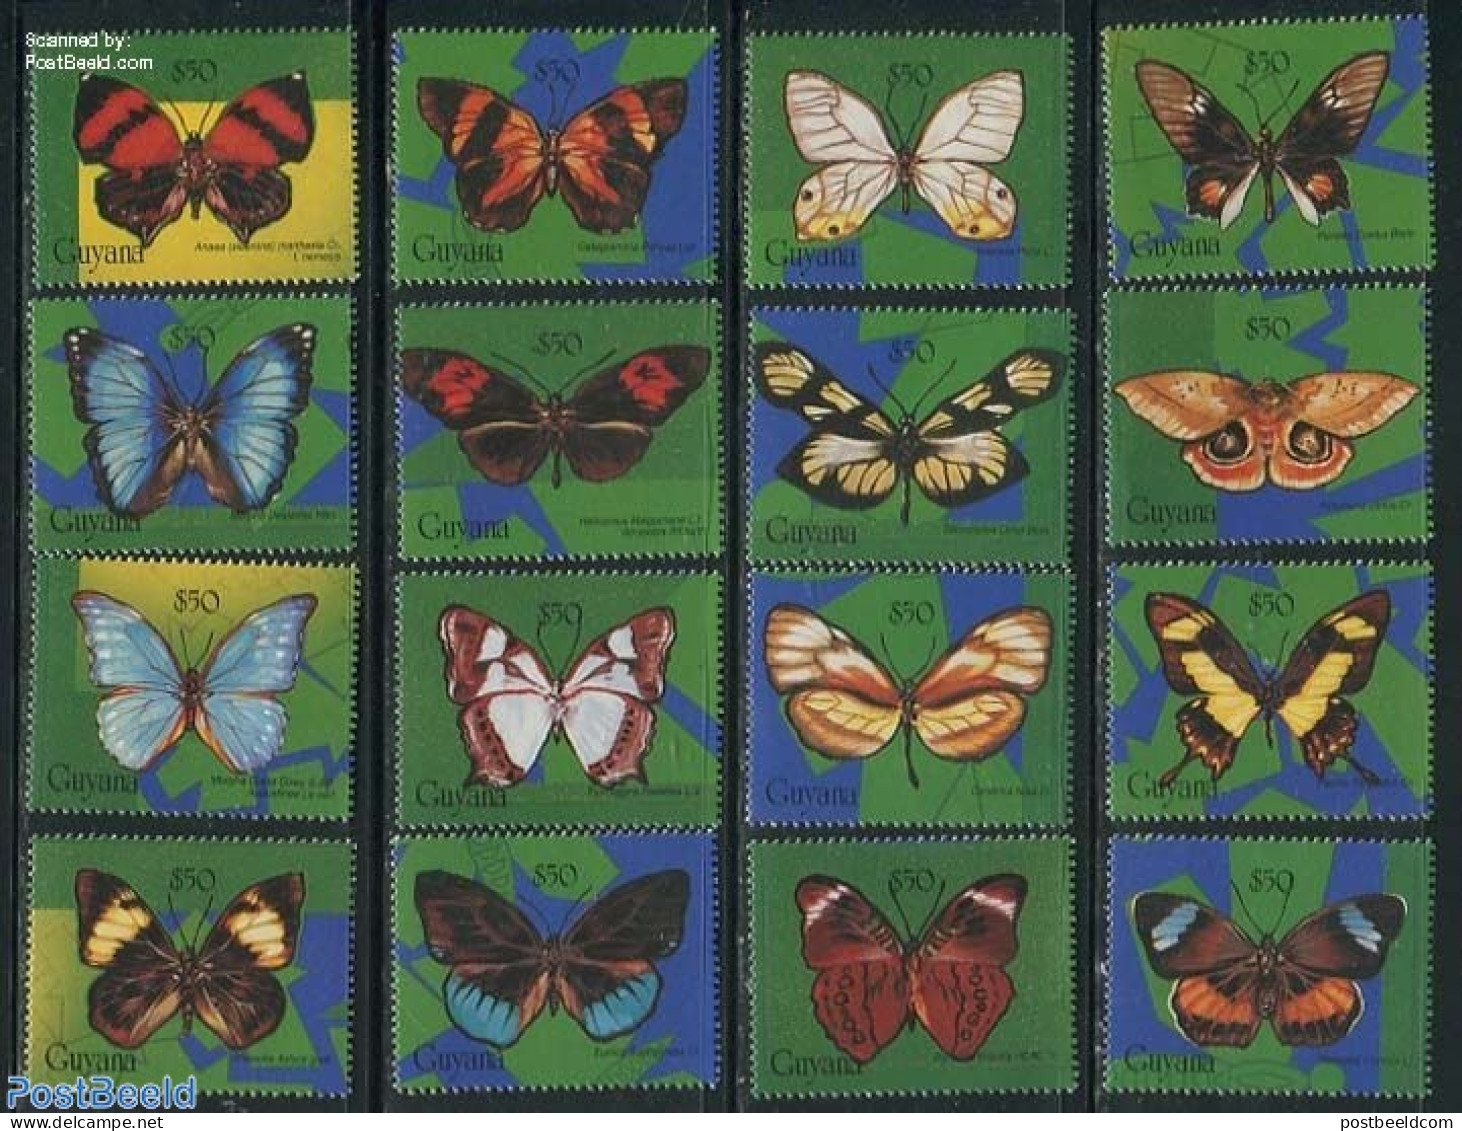 Guyana 1994 Butterflies 16v, Mint NH, Nature - Butterflies - Guyane (1966-...)